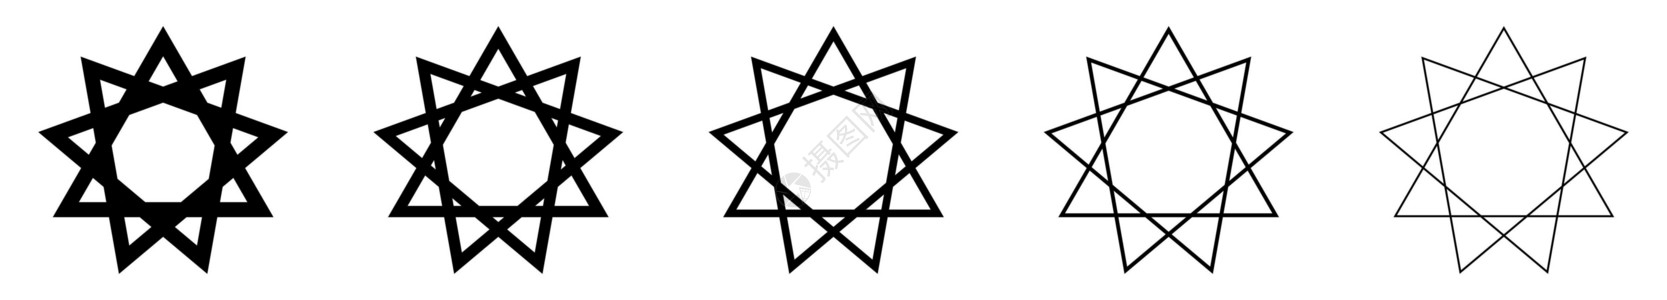 泛神星 黑线巴哈教标志集 巴哈教宗教象征祷告文化上帝世界神学仪式精神徽章信仰崇拜背景图片